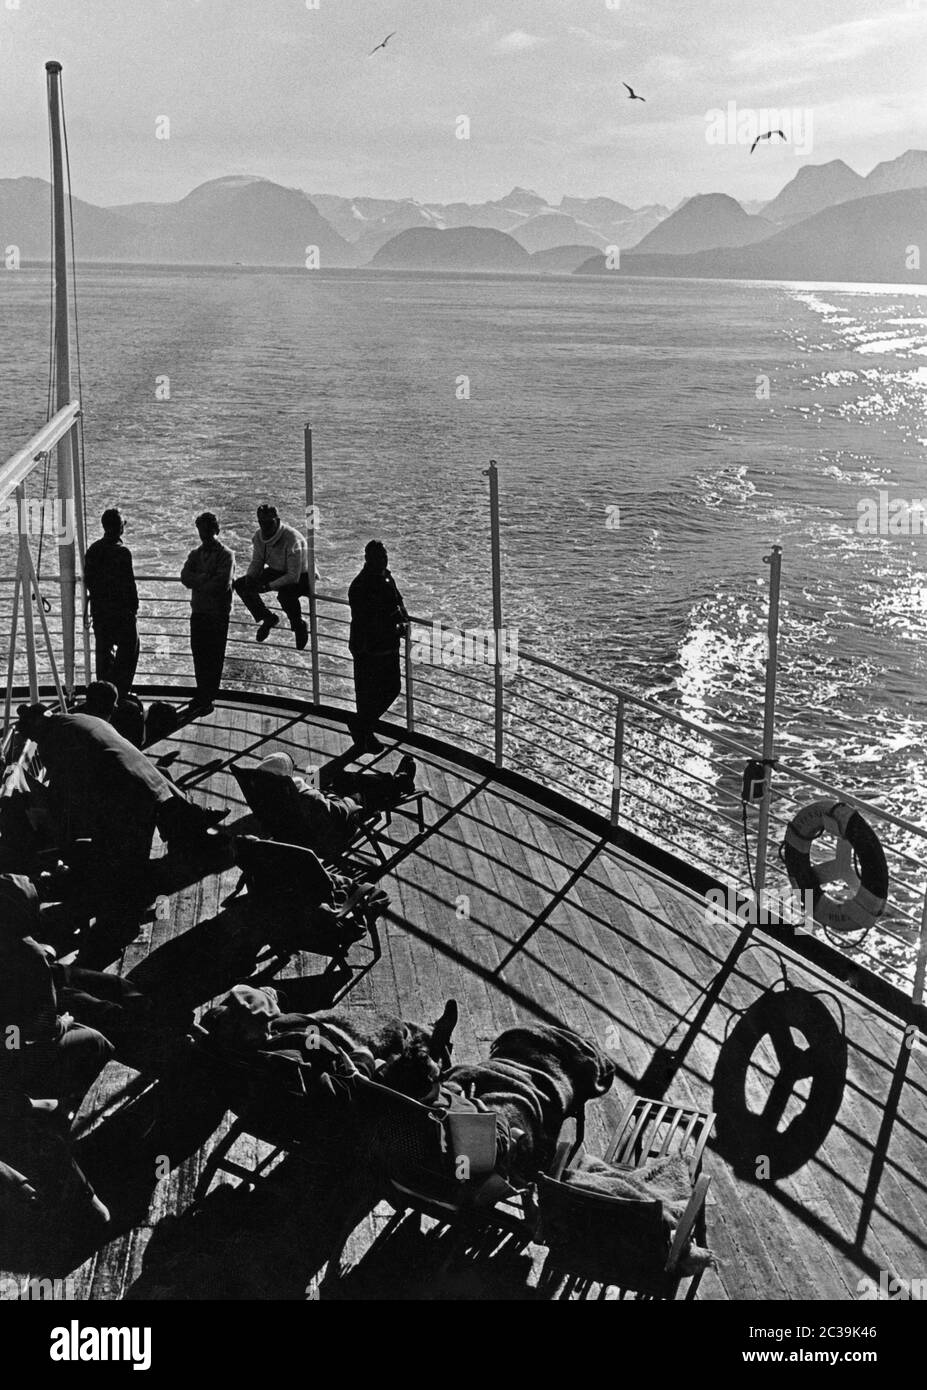 Kreuzfahrt auf der europäischen Nordsee bei Norwegen. Die Urlauber sitzen in Liegestühlen auf der Terrasse. Undatierte Aufnahme, ca. 1960. Stockfoto